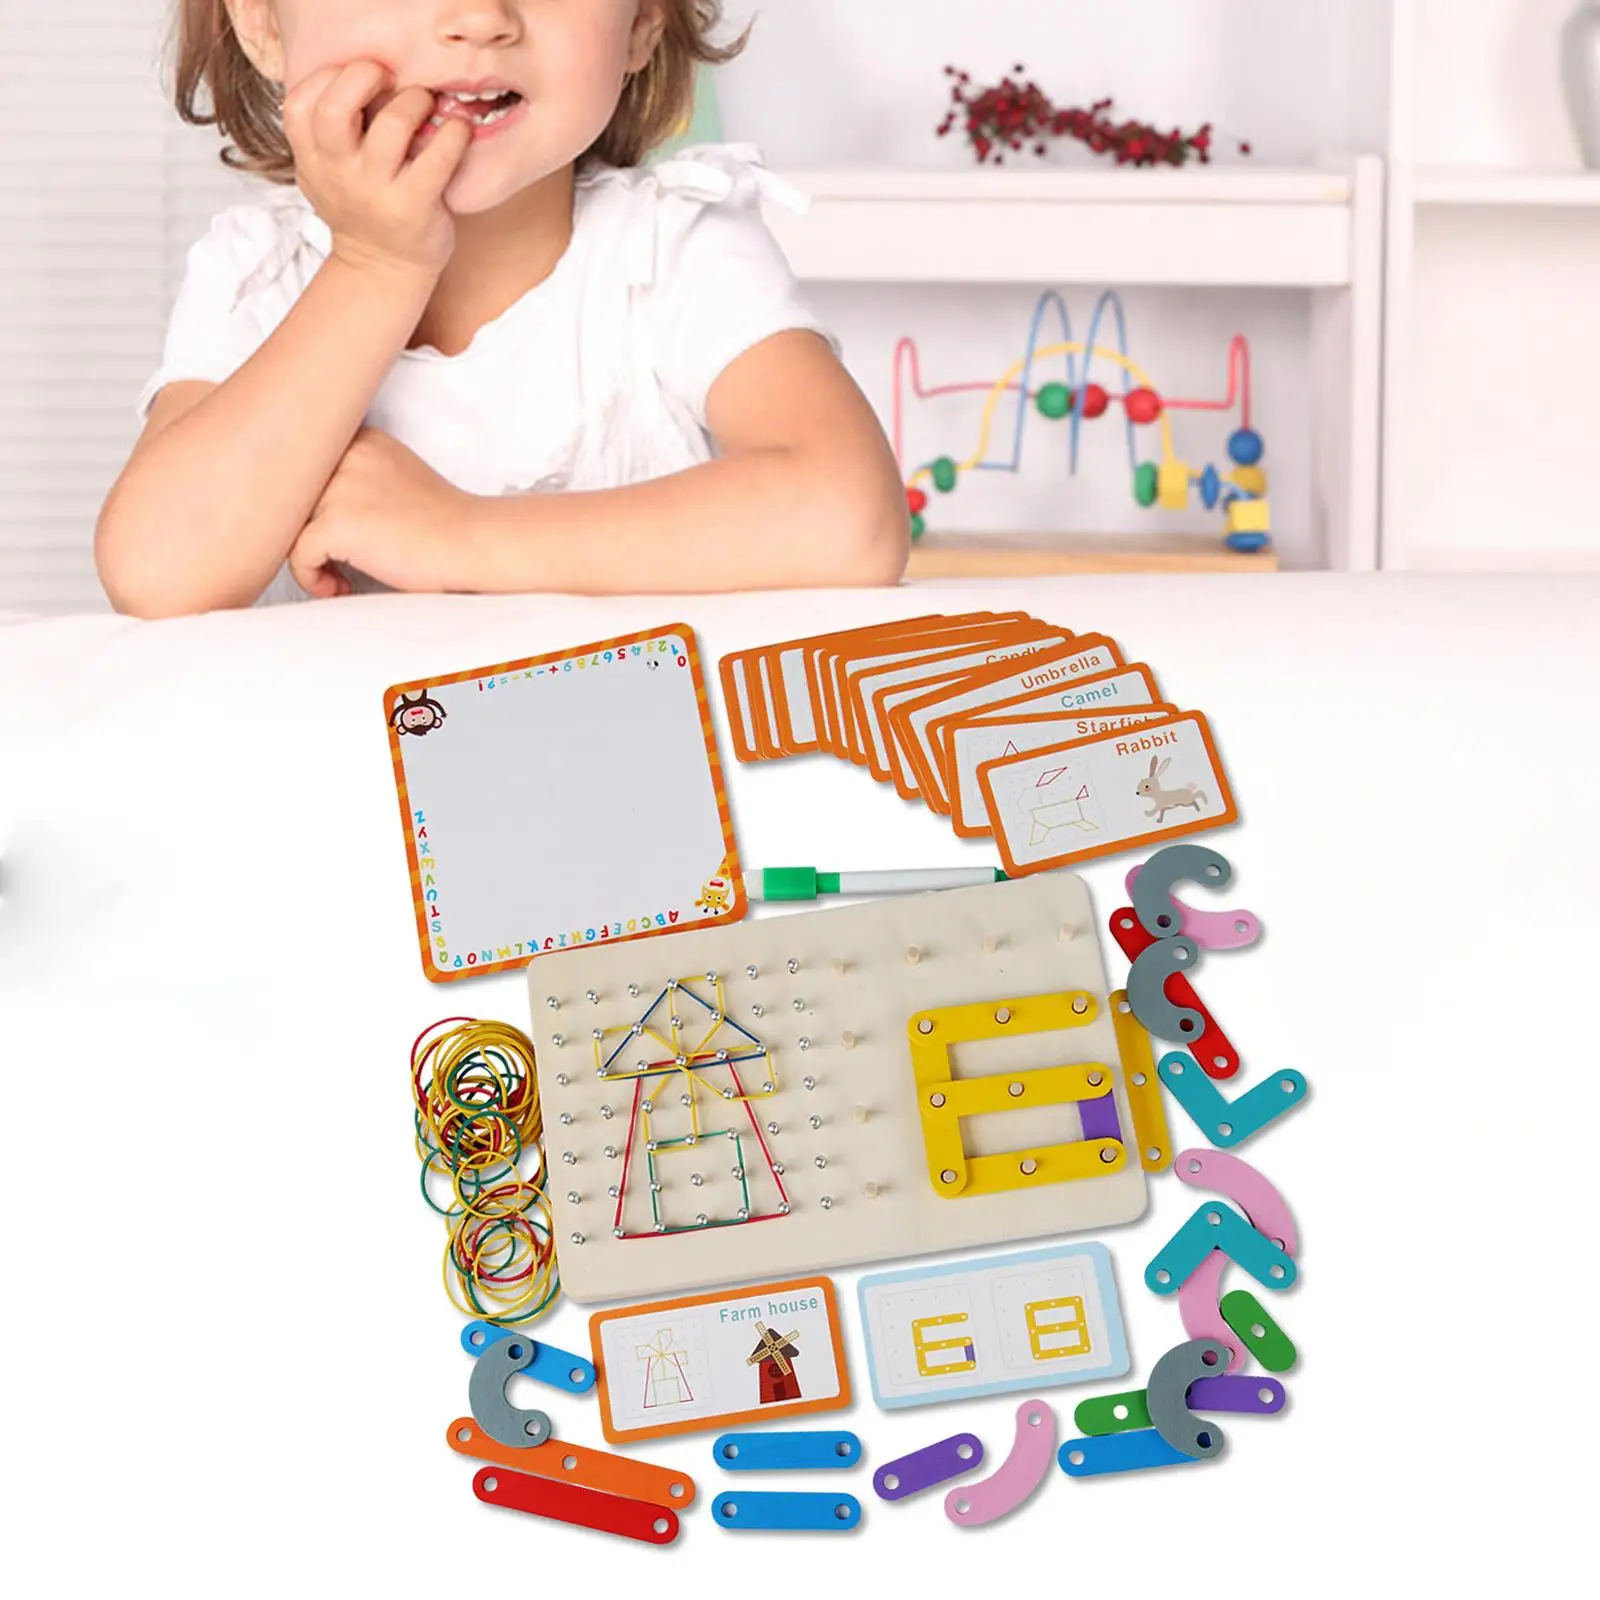 

Деревянная геодоска, игрушка Монтессори, головоломка для развития мозга, пегборд, Сортировочная игра, гео-доска для детей дошкольного возраста, мальчиков и девочек, детская игрушка